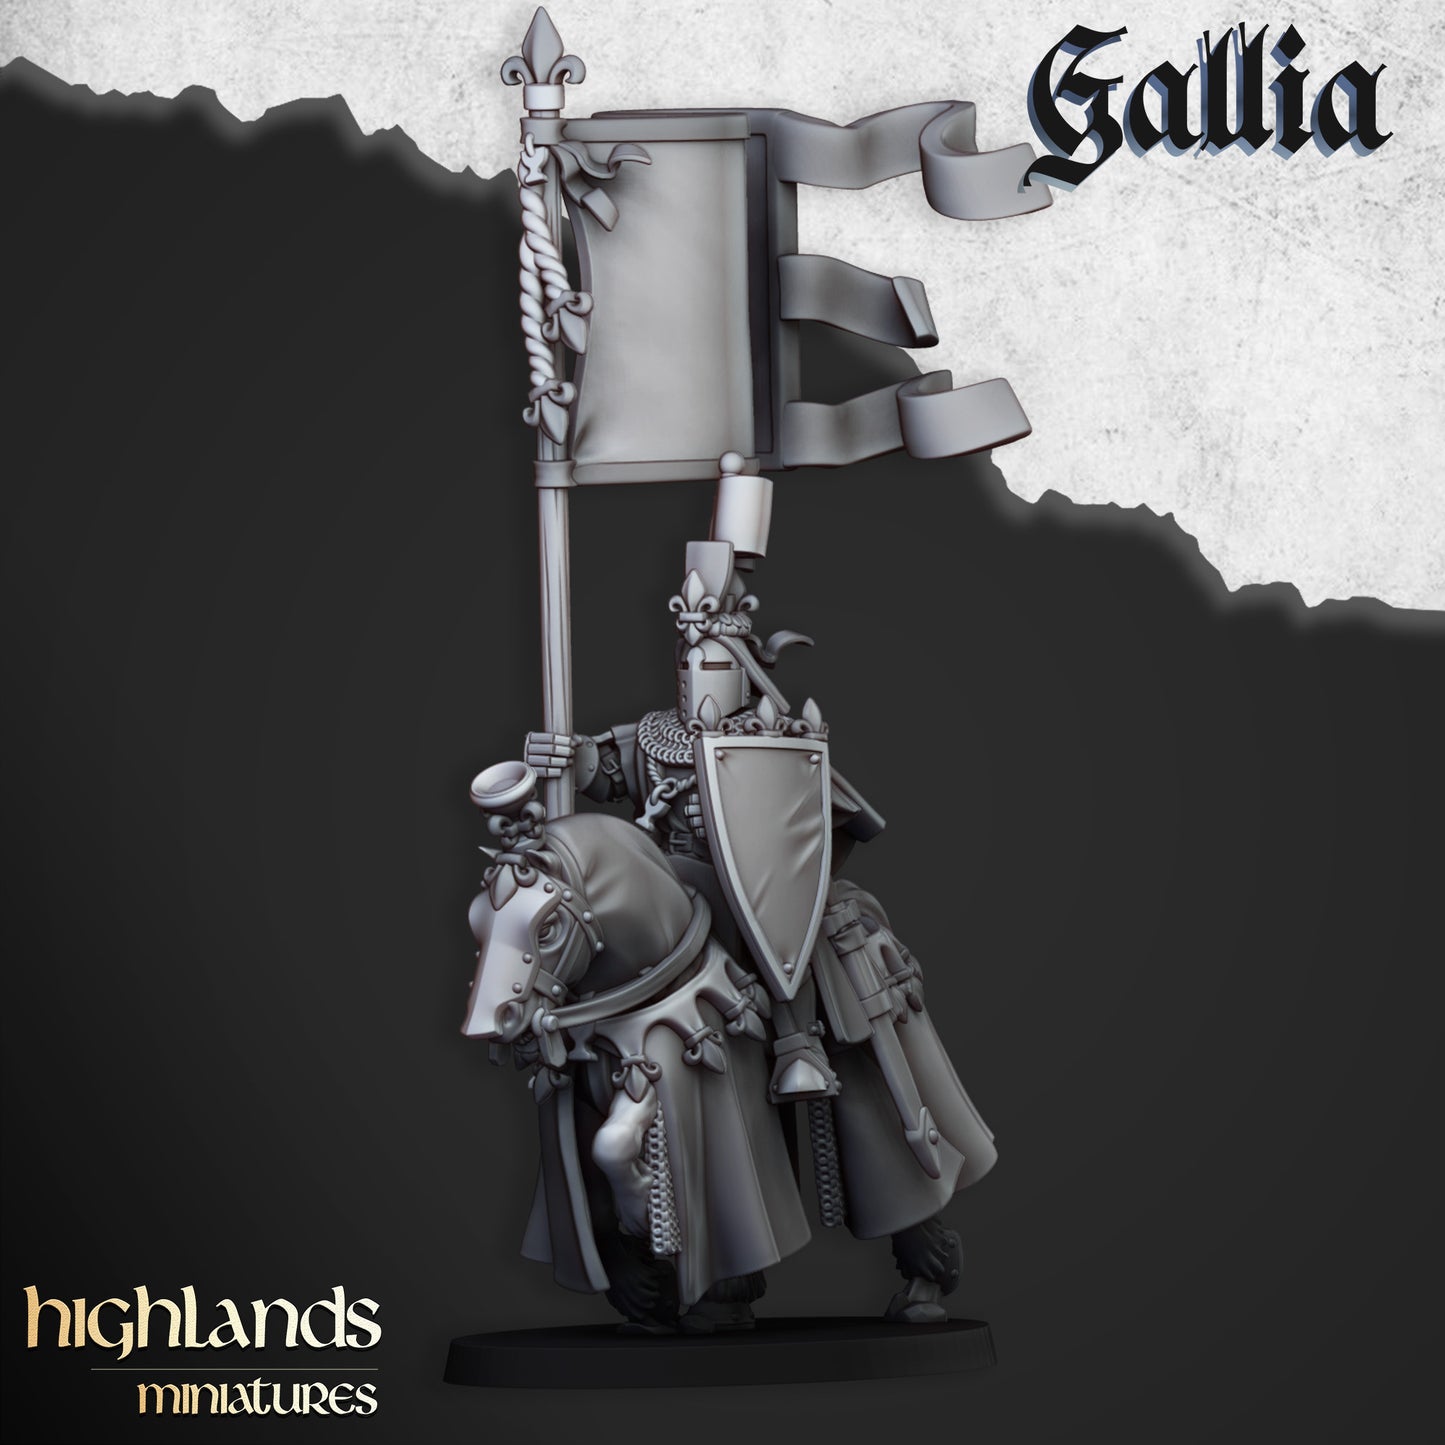 Royal Knights of Gallia / CG